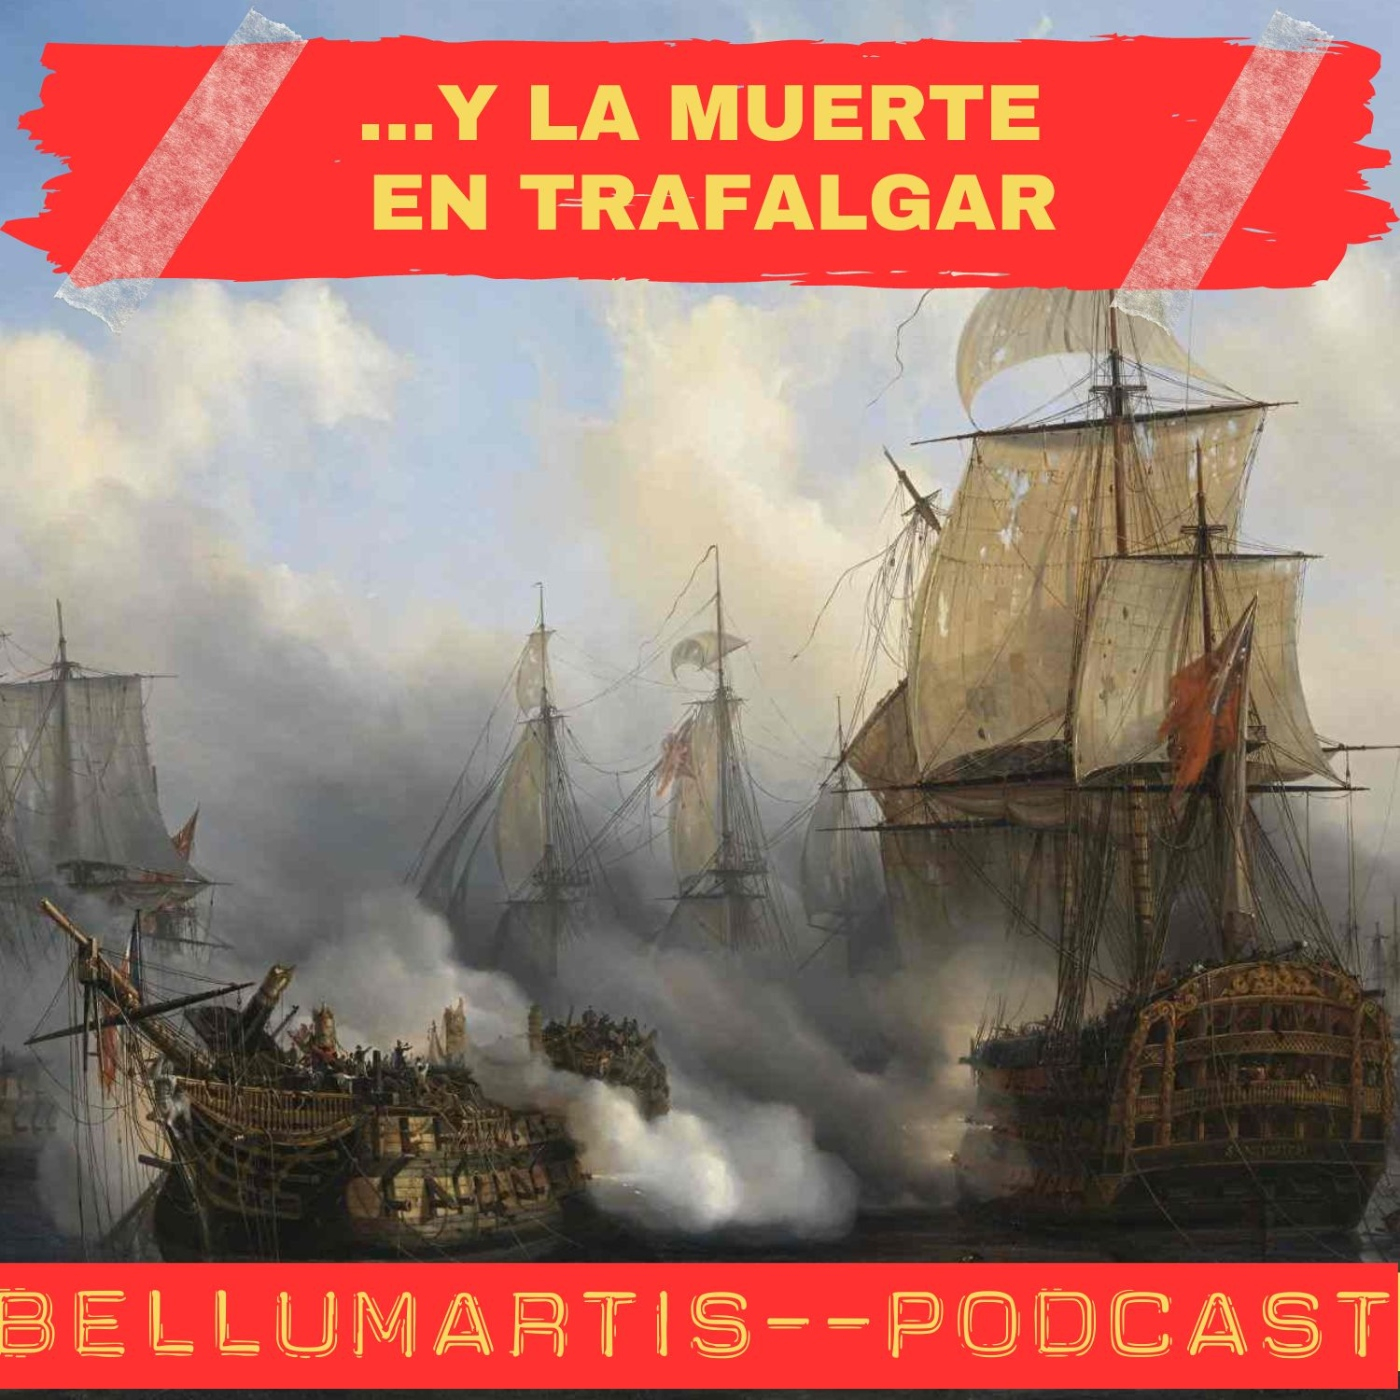 ... Y LA MUERTE EN TRAFALGAR: ¿Qué ocurrió realmente en 1805? *Almirante (R) Juan Rodríguez Garat* - Acceso anticipado